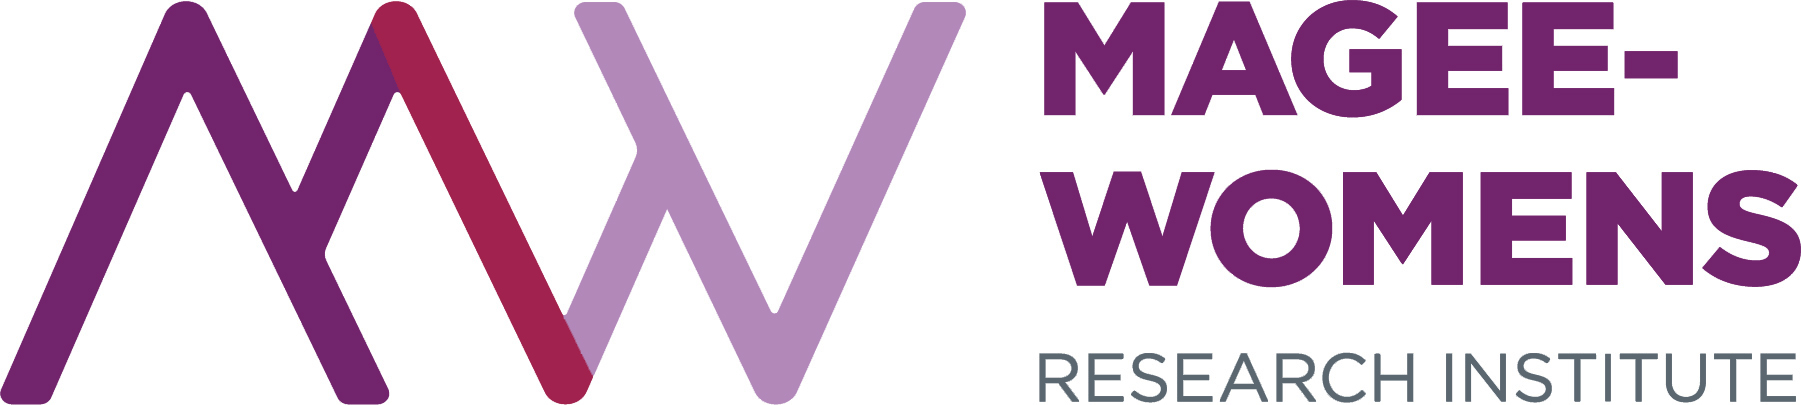 MWRI logo